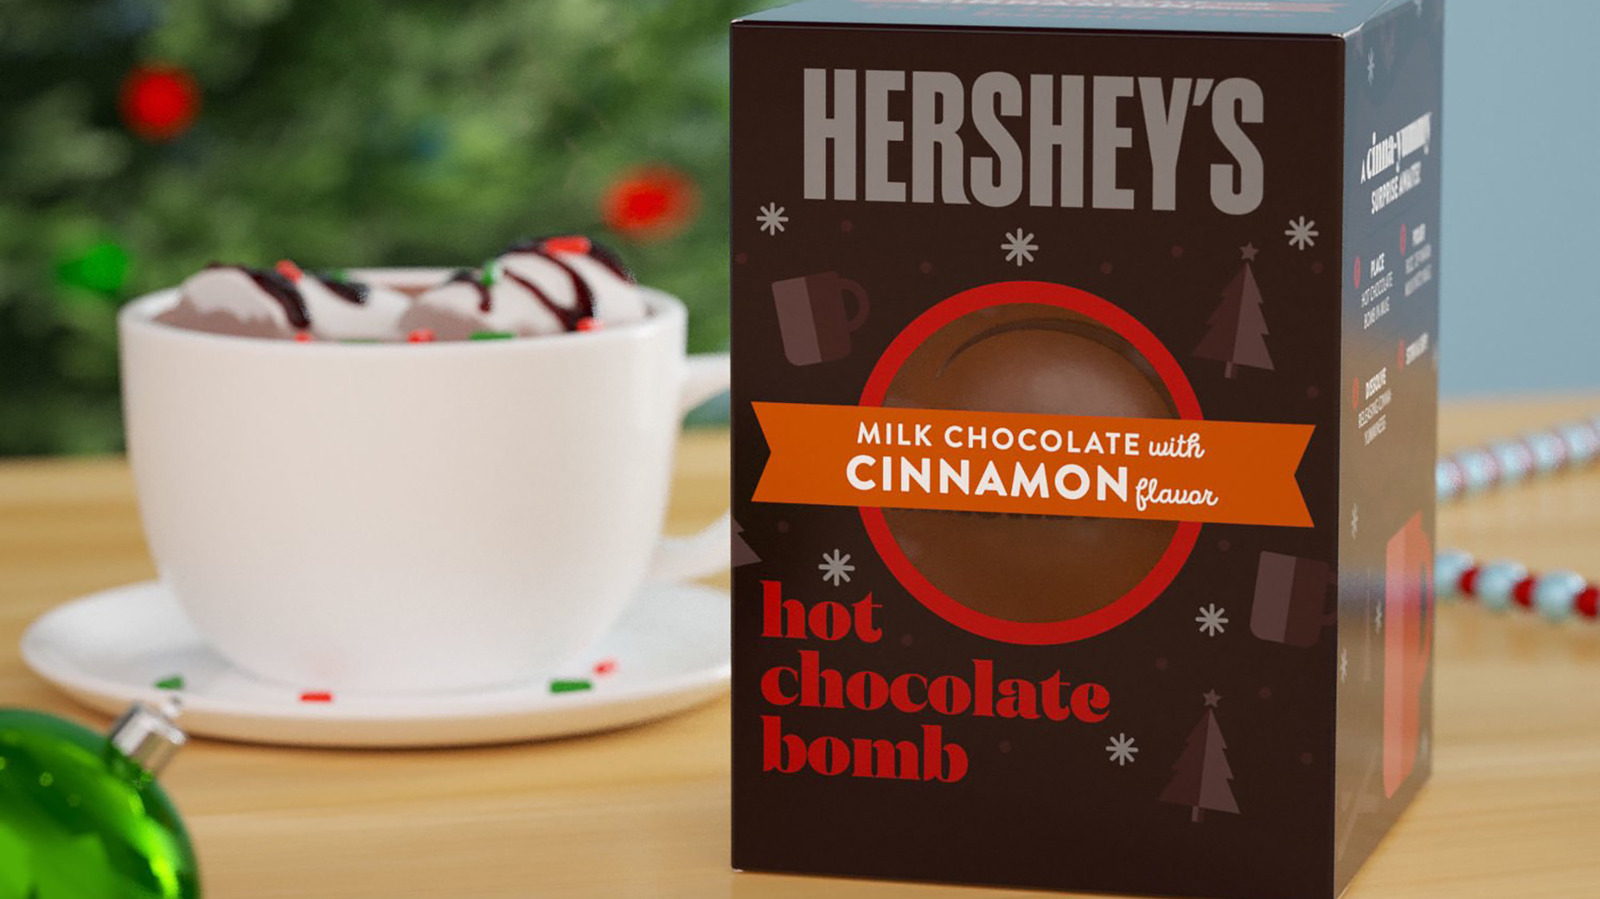 Hershey's chocolate bomb.jpg